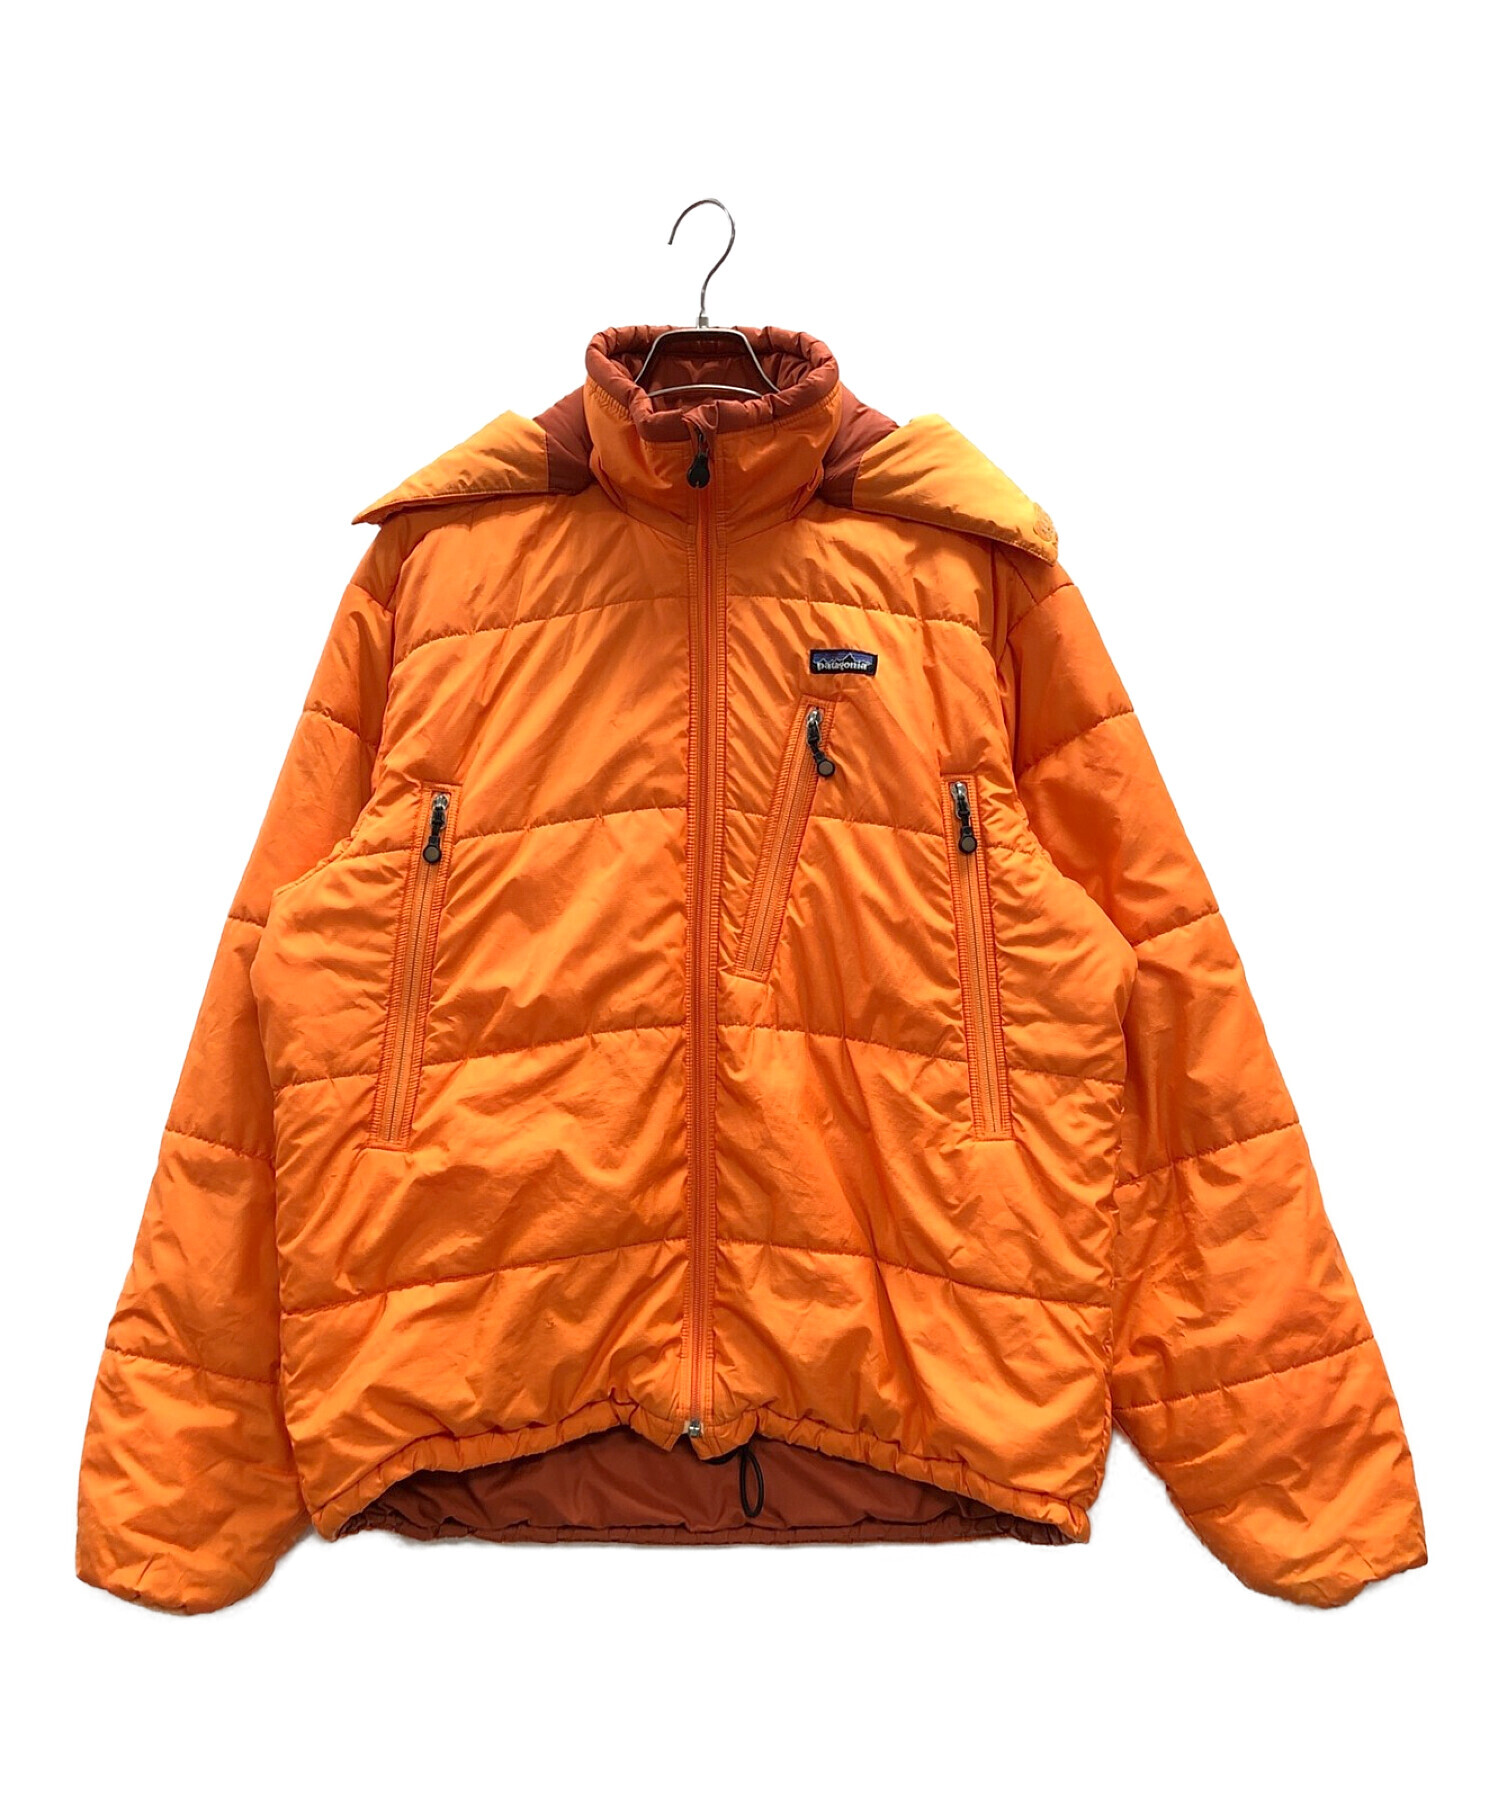 Patagonia (パタゴニア) パフジャケット オレンジ サイズ:L